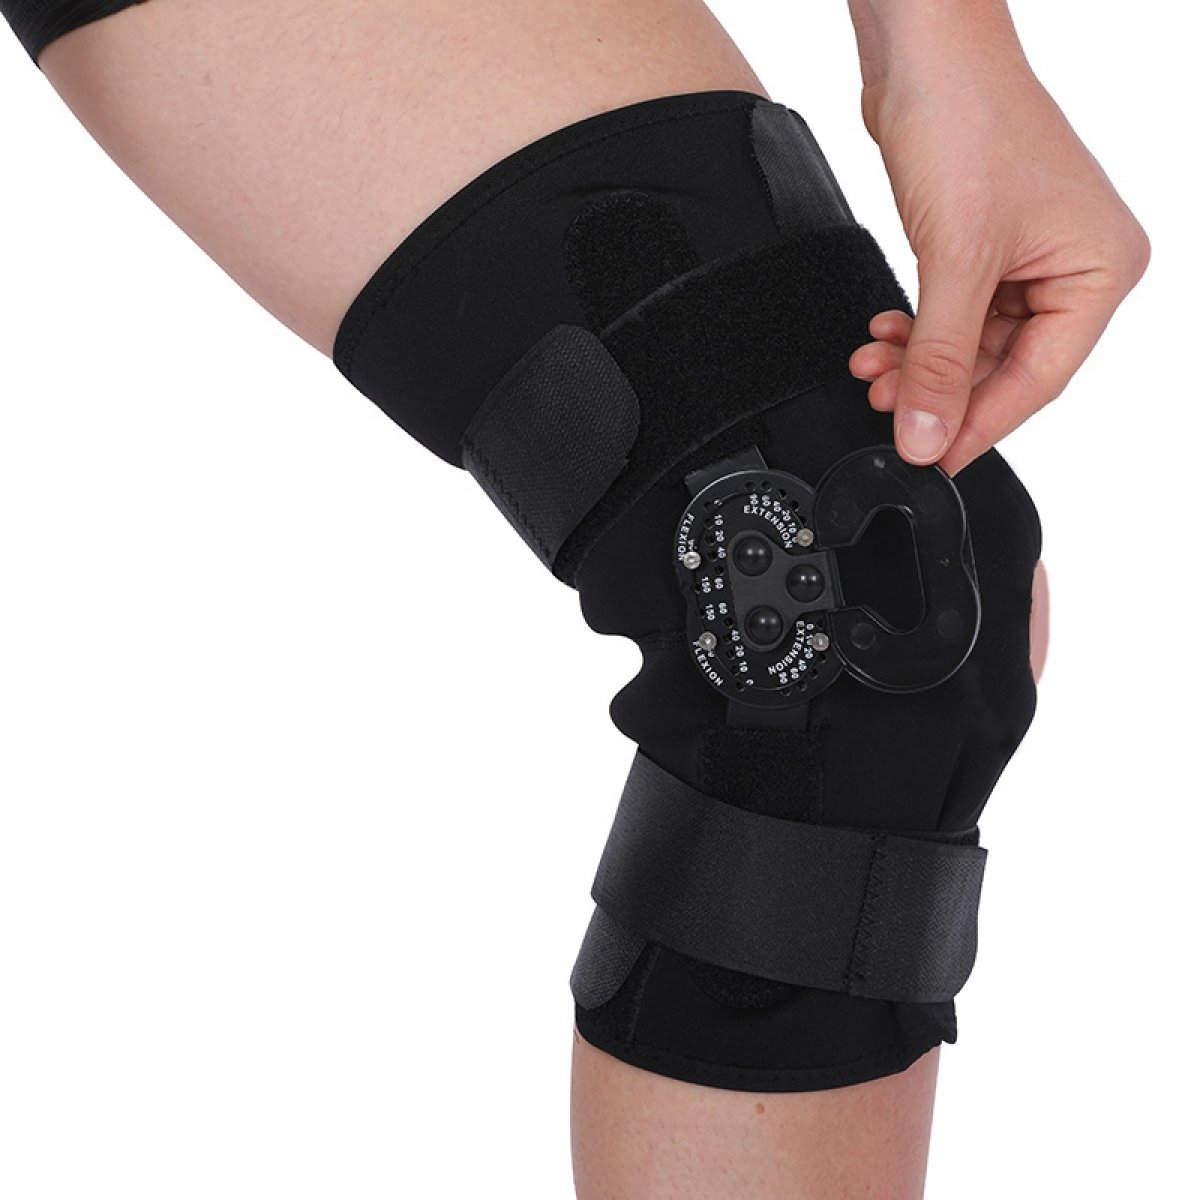 Best Hinged ROM Knee Brace for Meniscus Tear